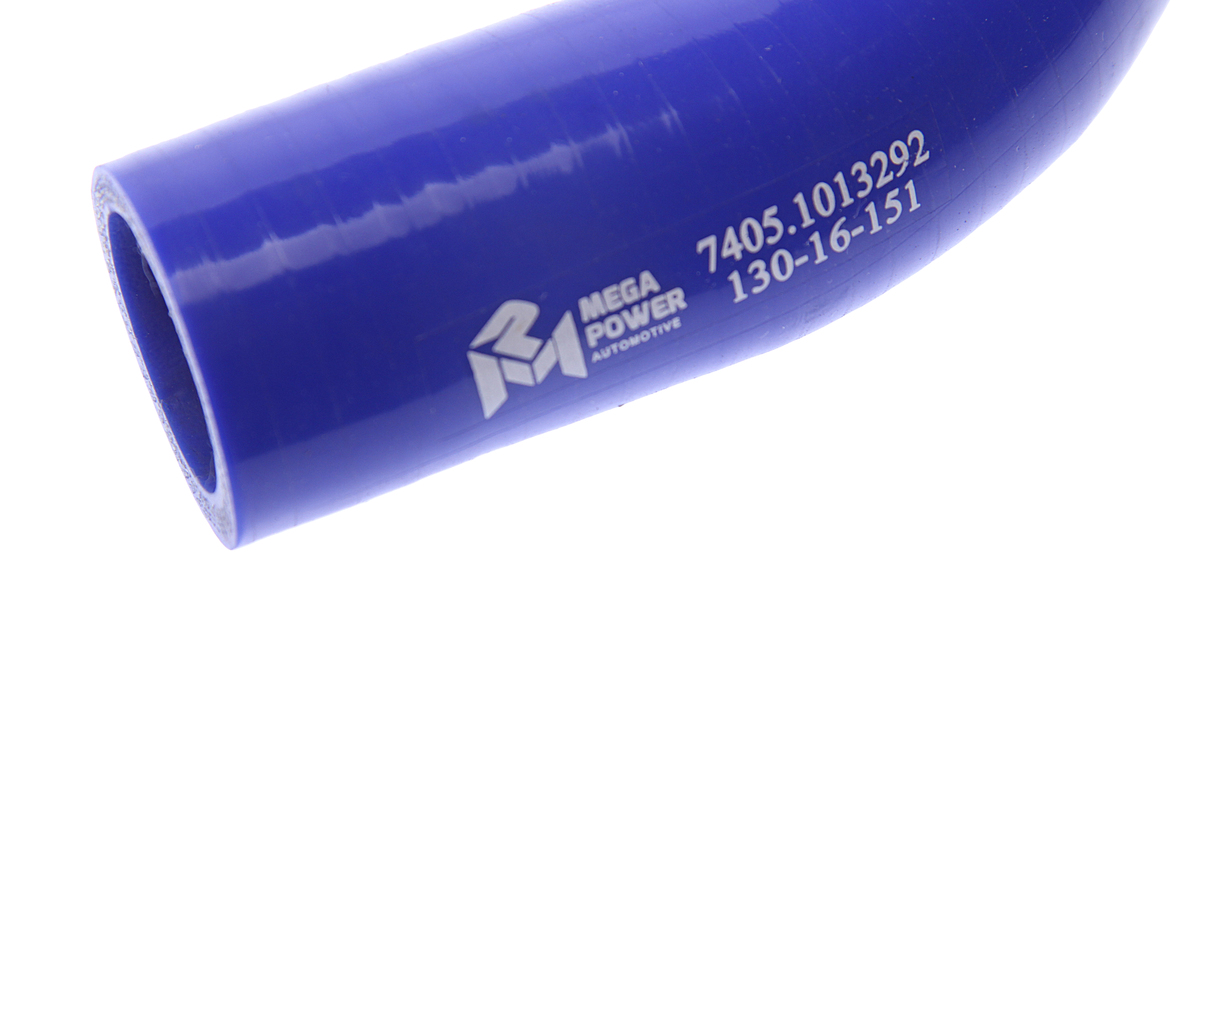 Патрубок КАМАЗ-ЕВРО теплообменника синий силикон (L=135мм,d=31), 130-16-151, MEGAPOWER